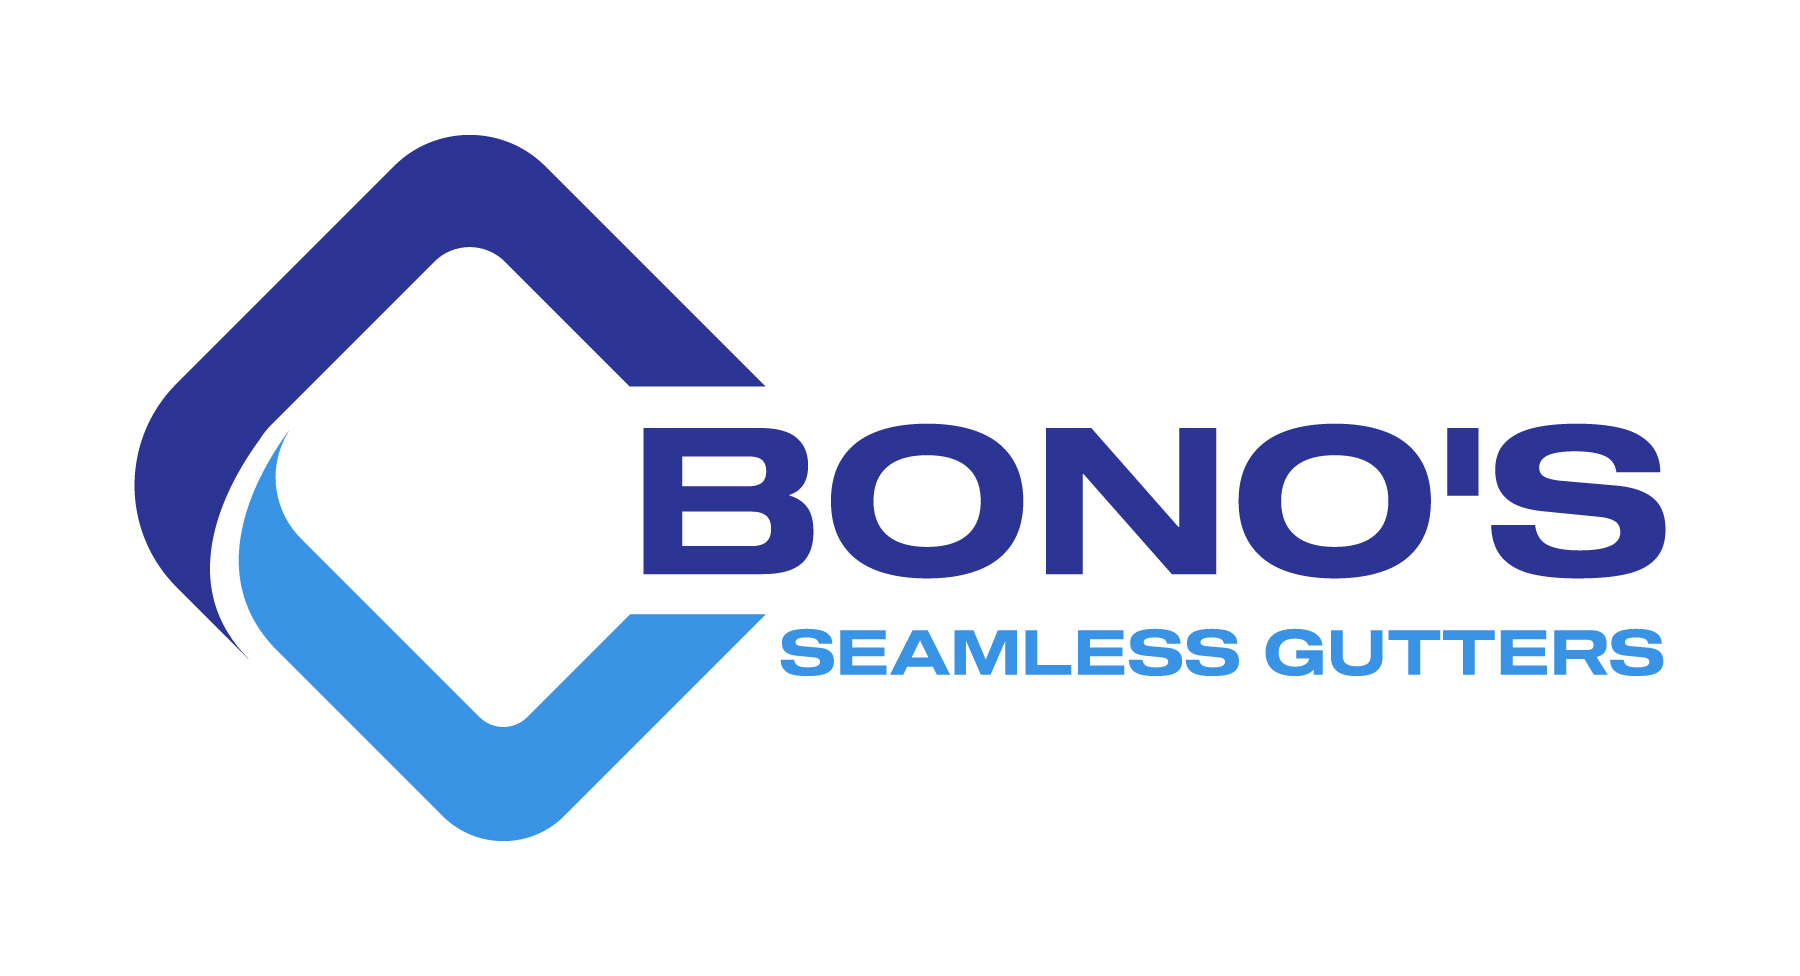 Bonos Seamless Gutters